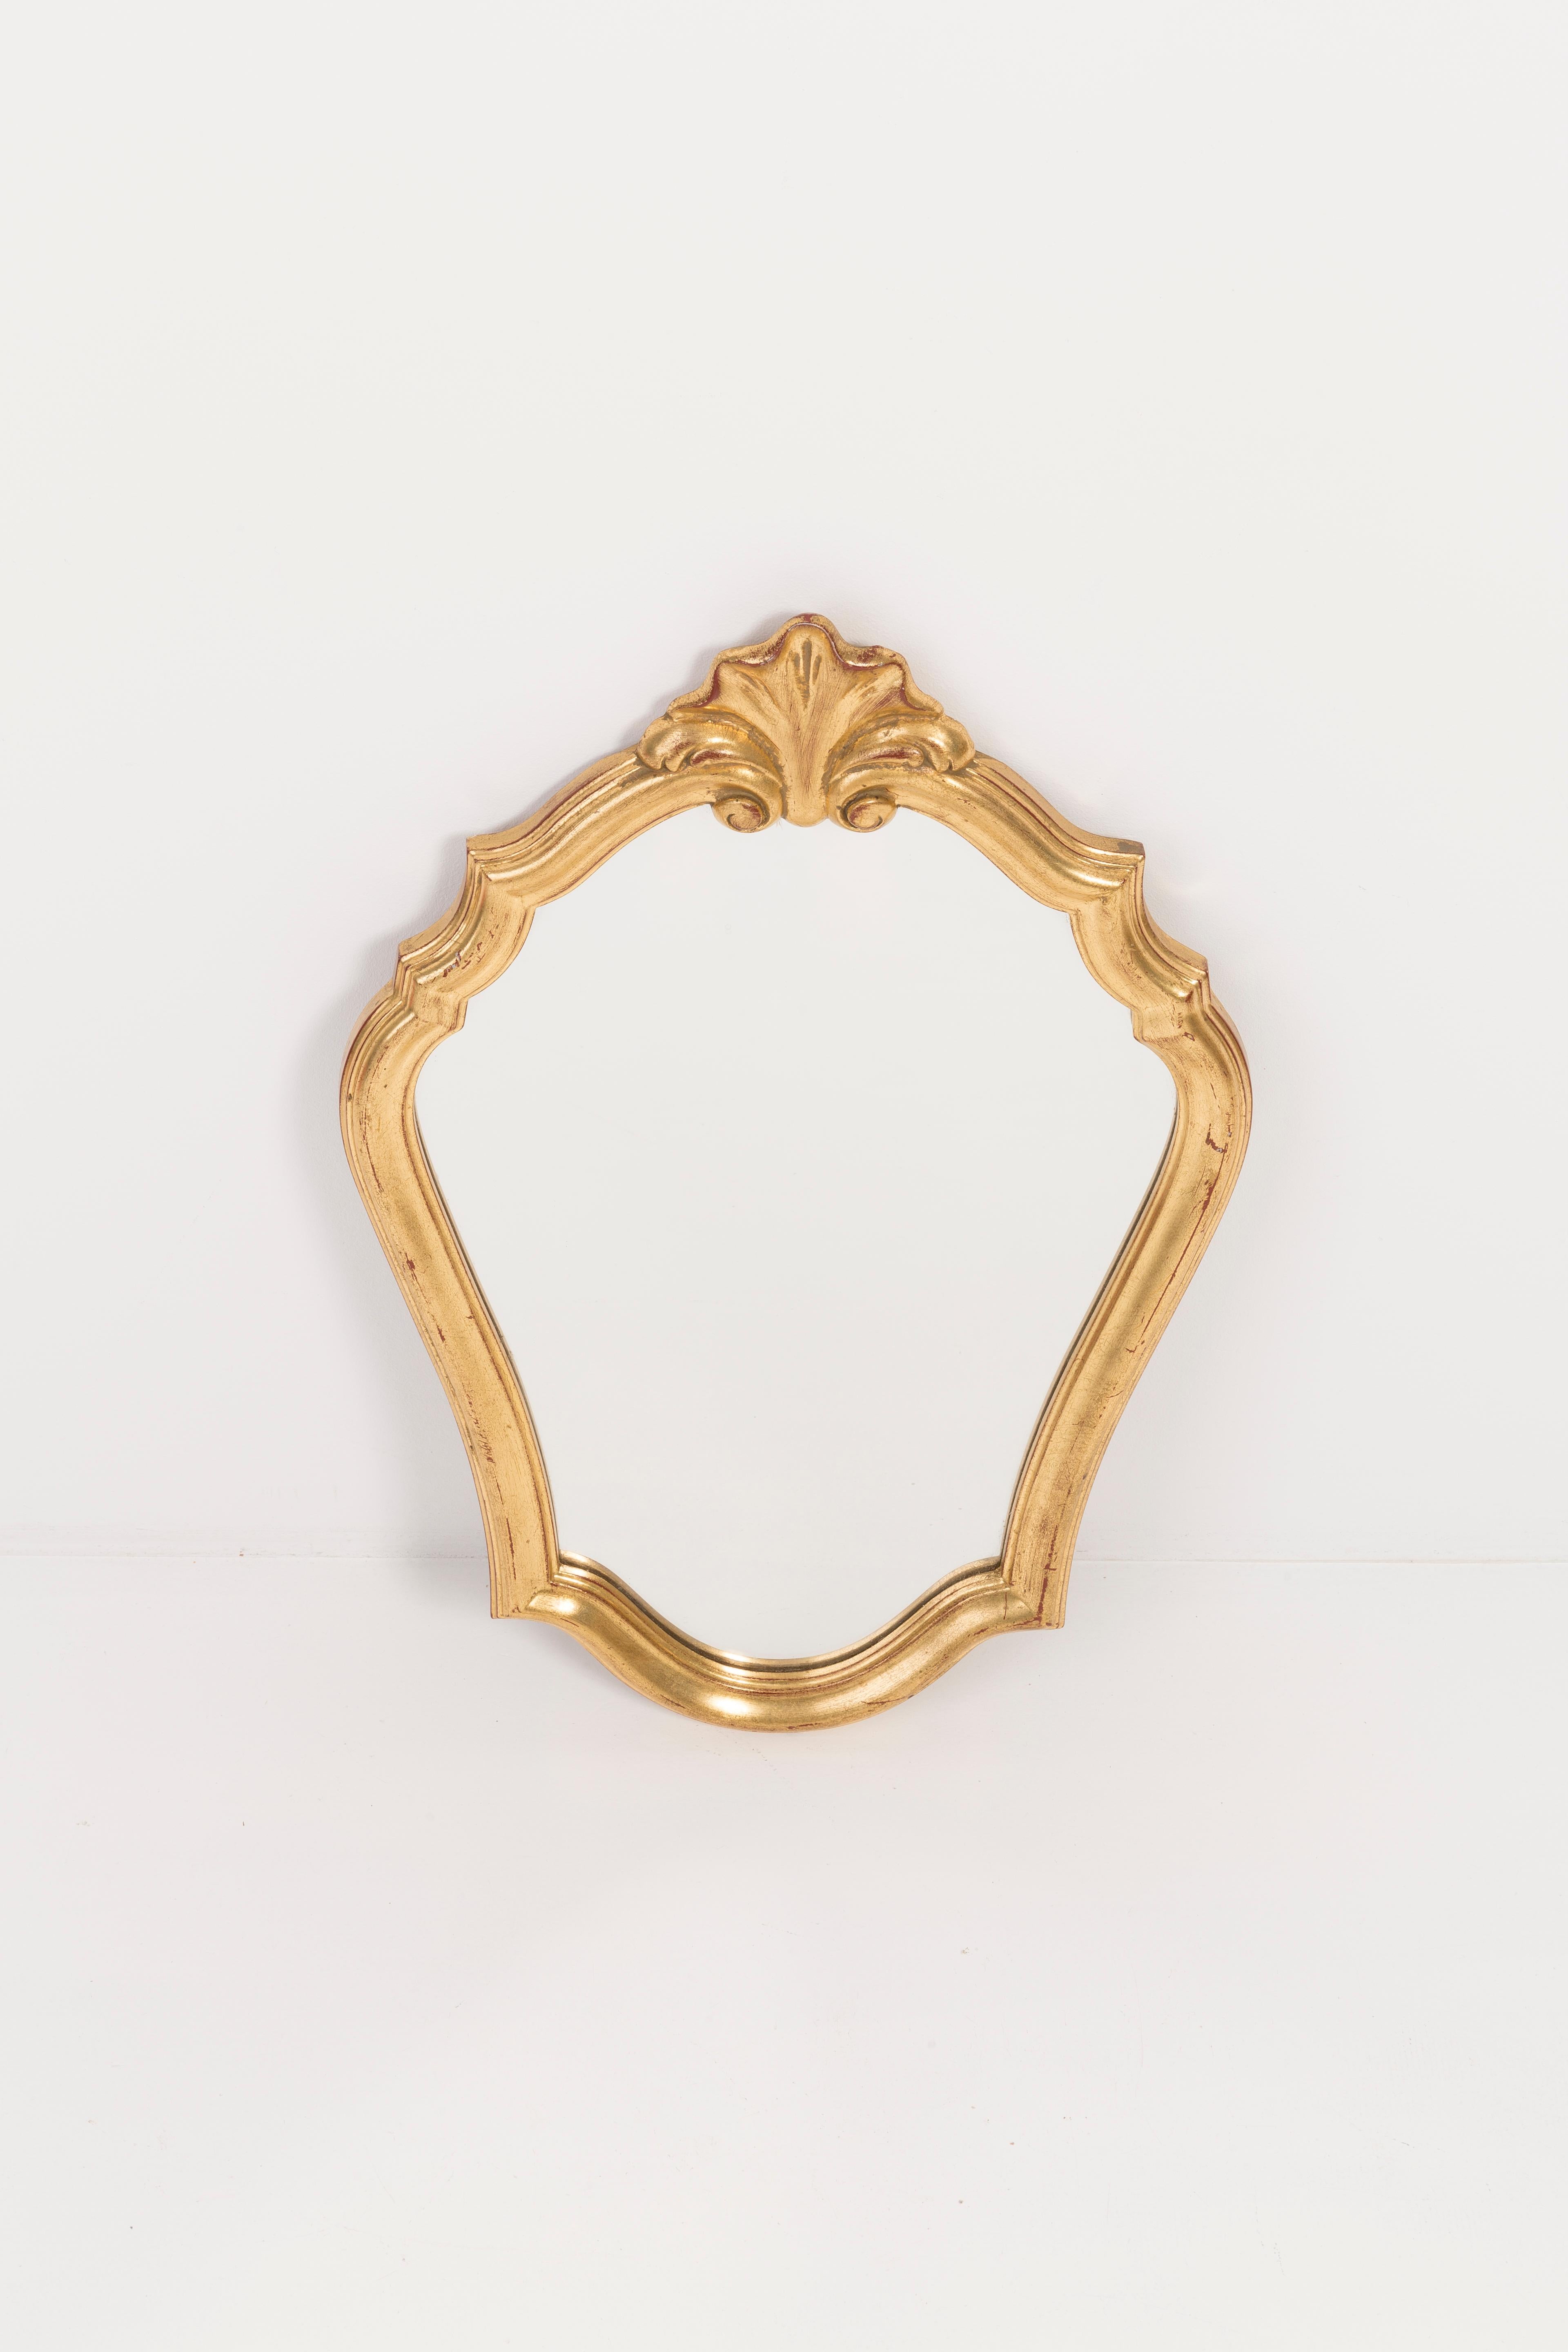 Ein Spiegel in einem goldenen Zierrahmen aus Belgien. Der Rahmen ist aus Holz gefertigt. Spiegel ist in sehr gutem Vintage-Zustand, keine Schäden oder Risse im Rahmen. Original Glas. Ein schönes Stück für jedes Interieur! Nur ein einziges Stück.